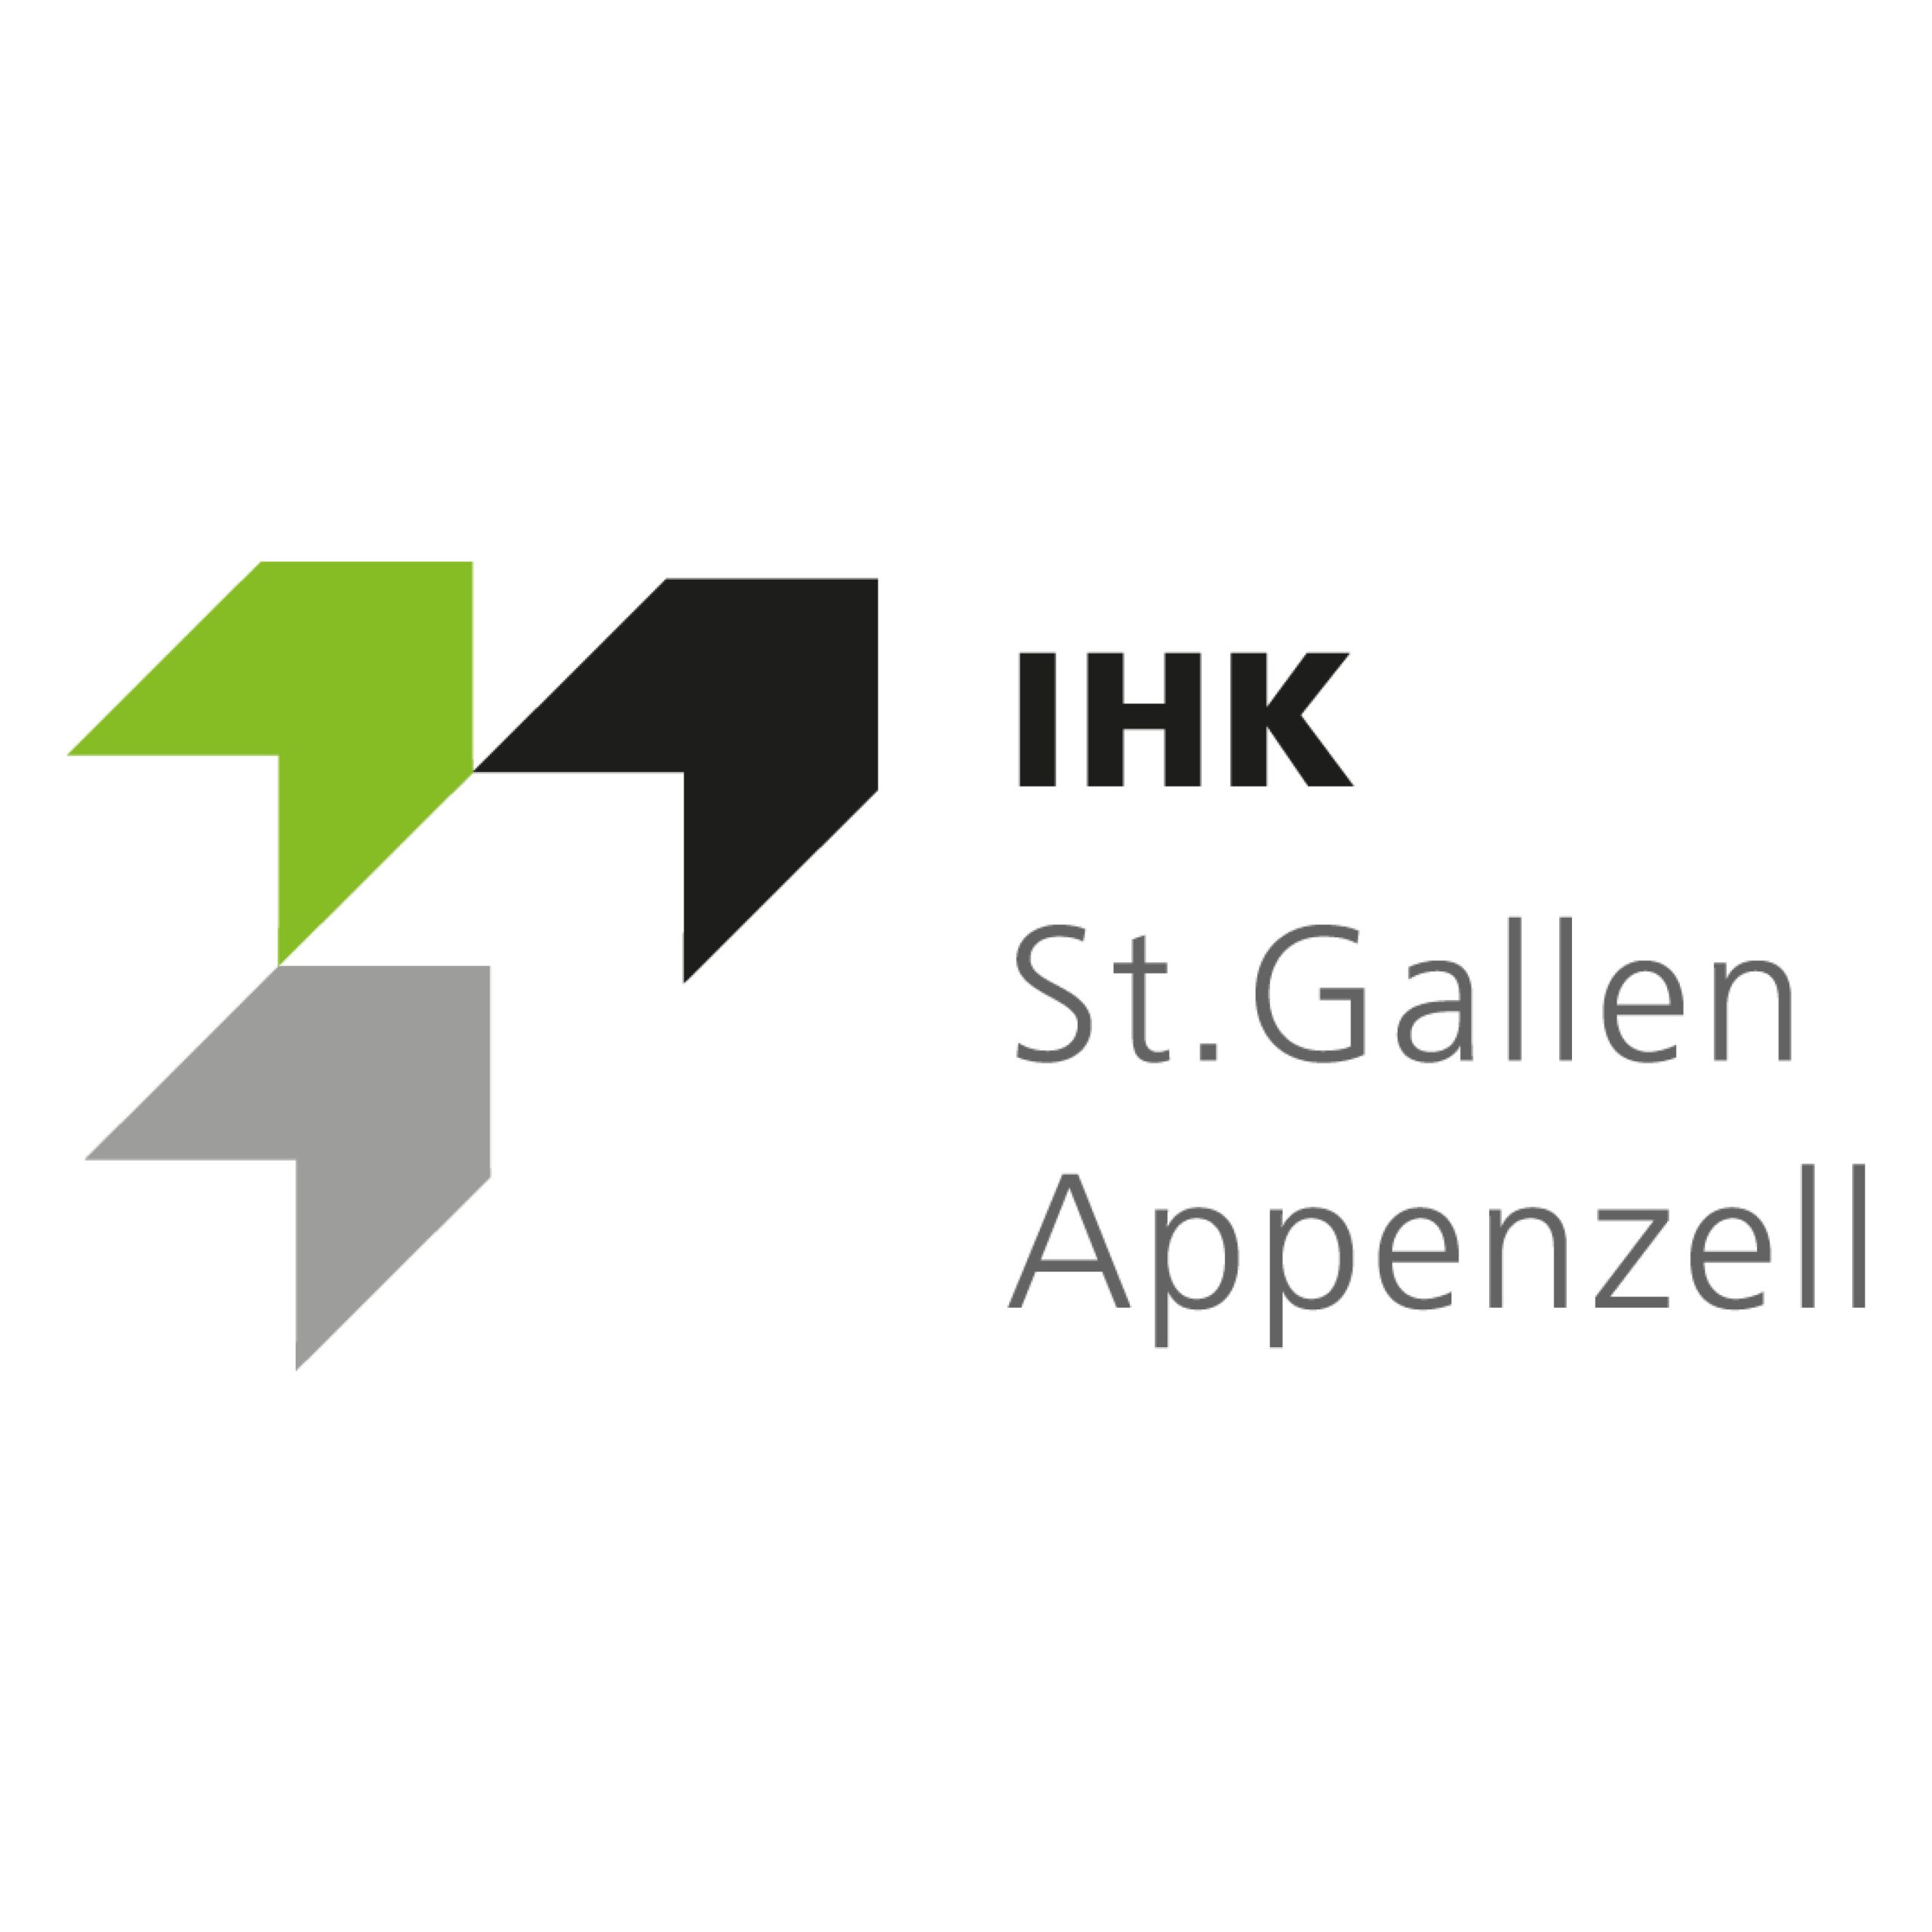 IHK-St.Gallen-Appenzell